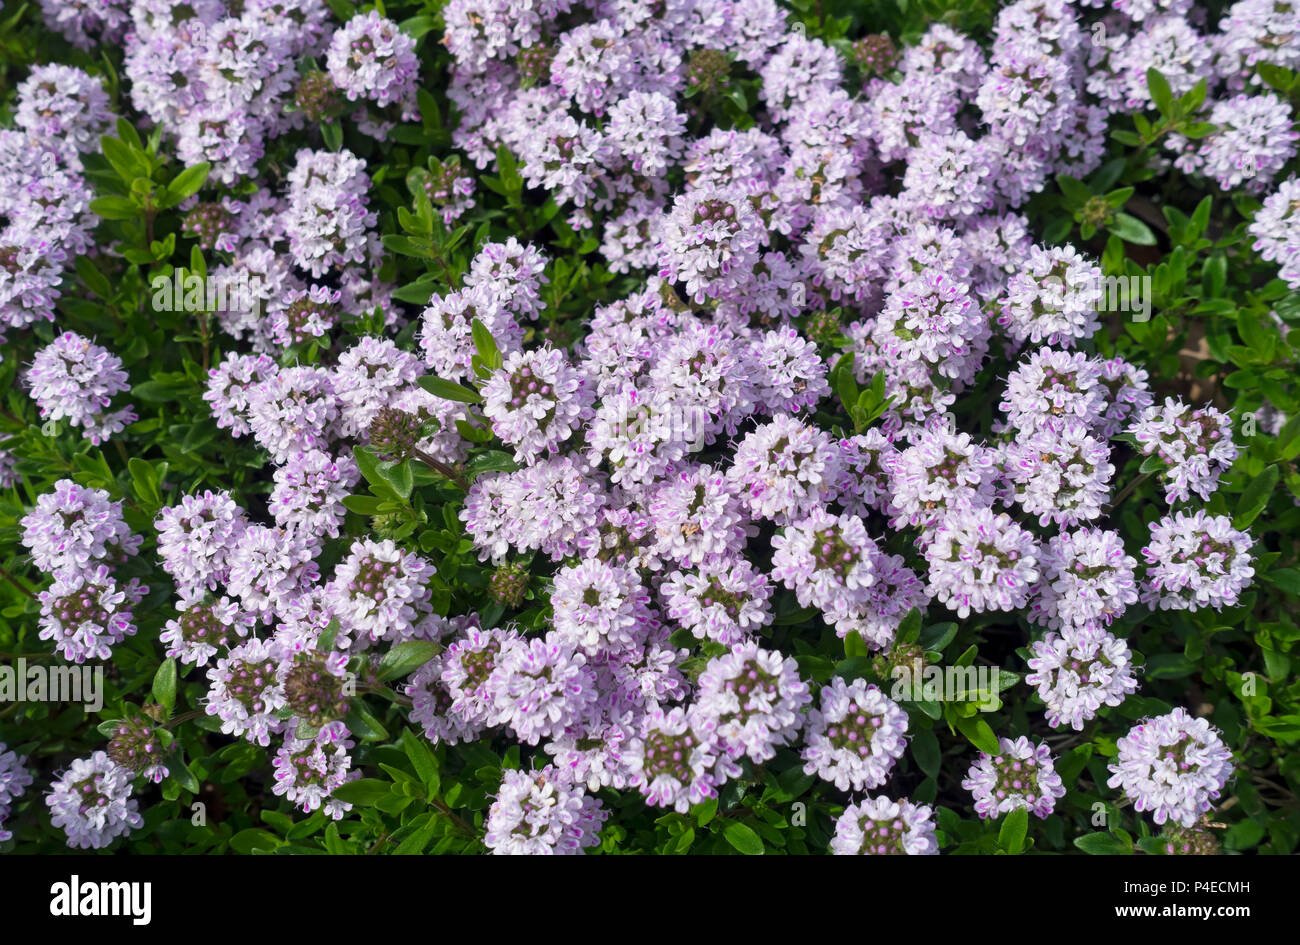 Nahaufnahme von lila Blume blühenden Garten Kräuter Thymianblüten im Frühling Sommer England UK Vereinigtes Königreich GB Großbritannien Stockfoto